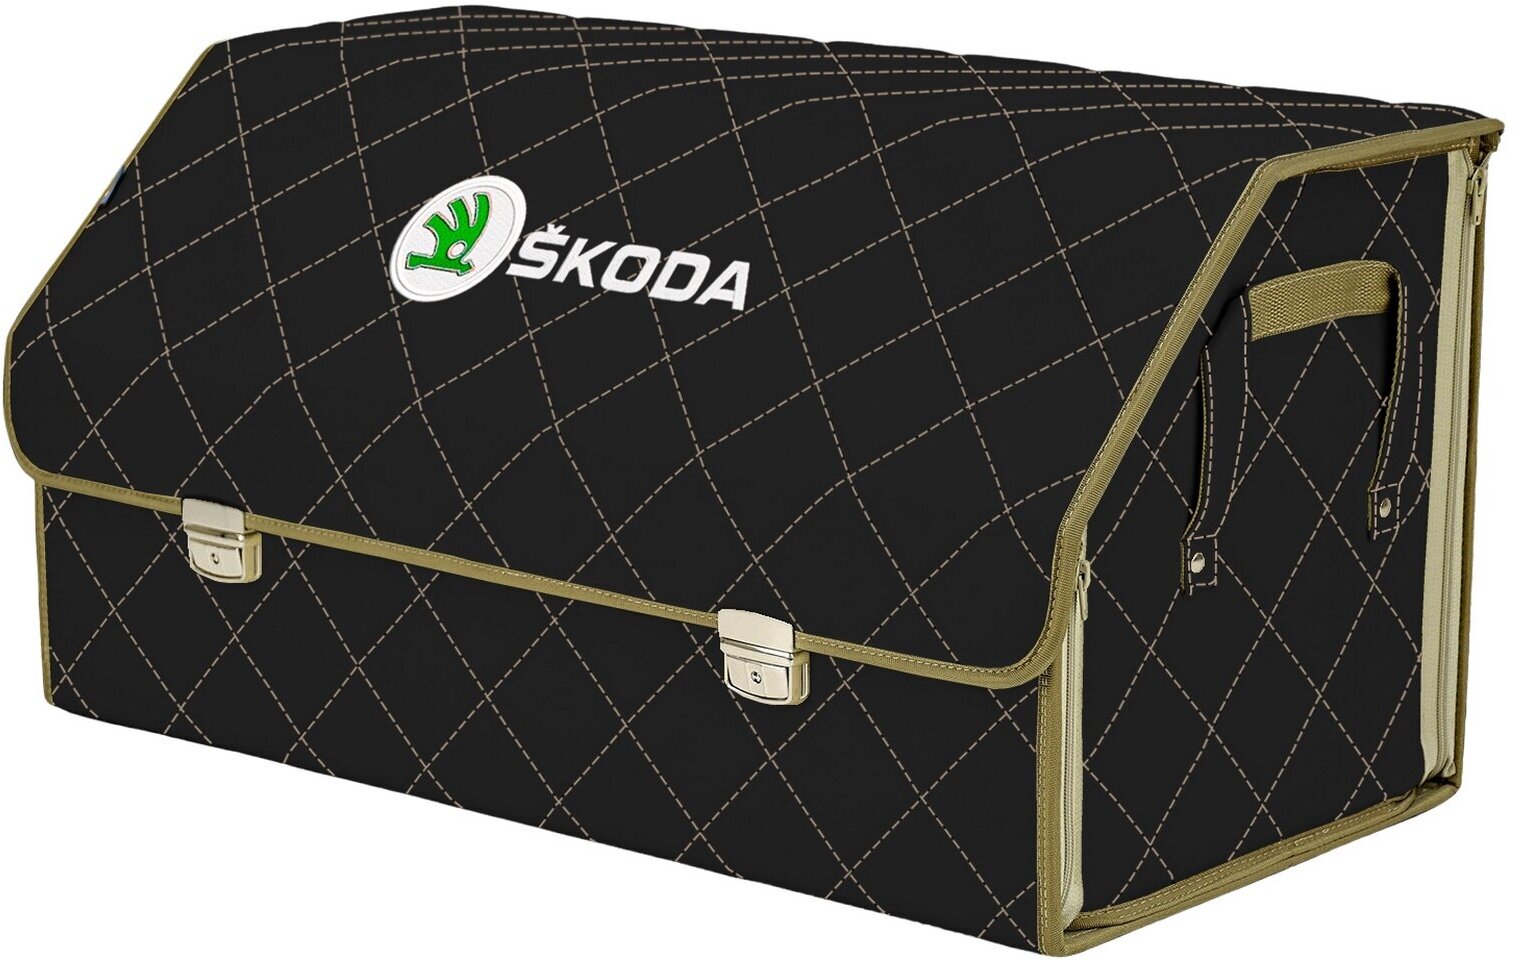 Органайзер-саквояж в багажник "Союз Премиум" (размер XL Plus). Цвет: черный с бежевой прострочкой Ромб и вышивкой Skoda (Шкода).